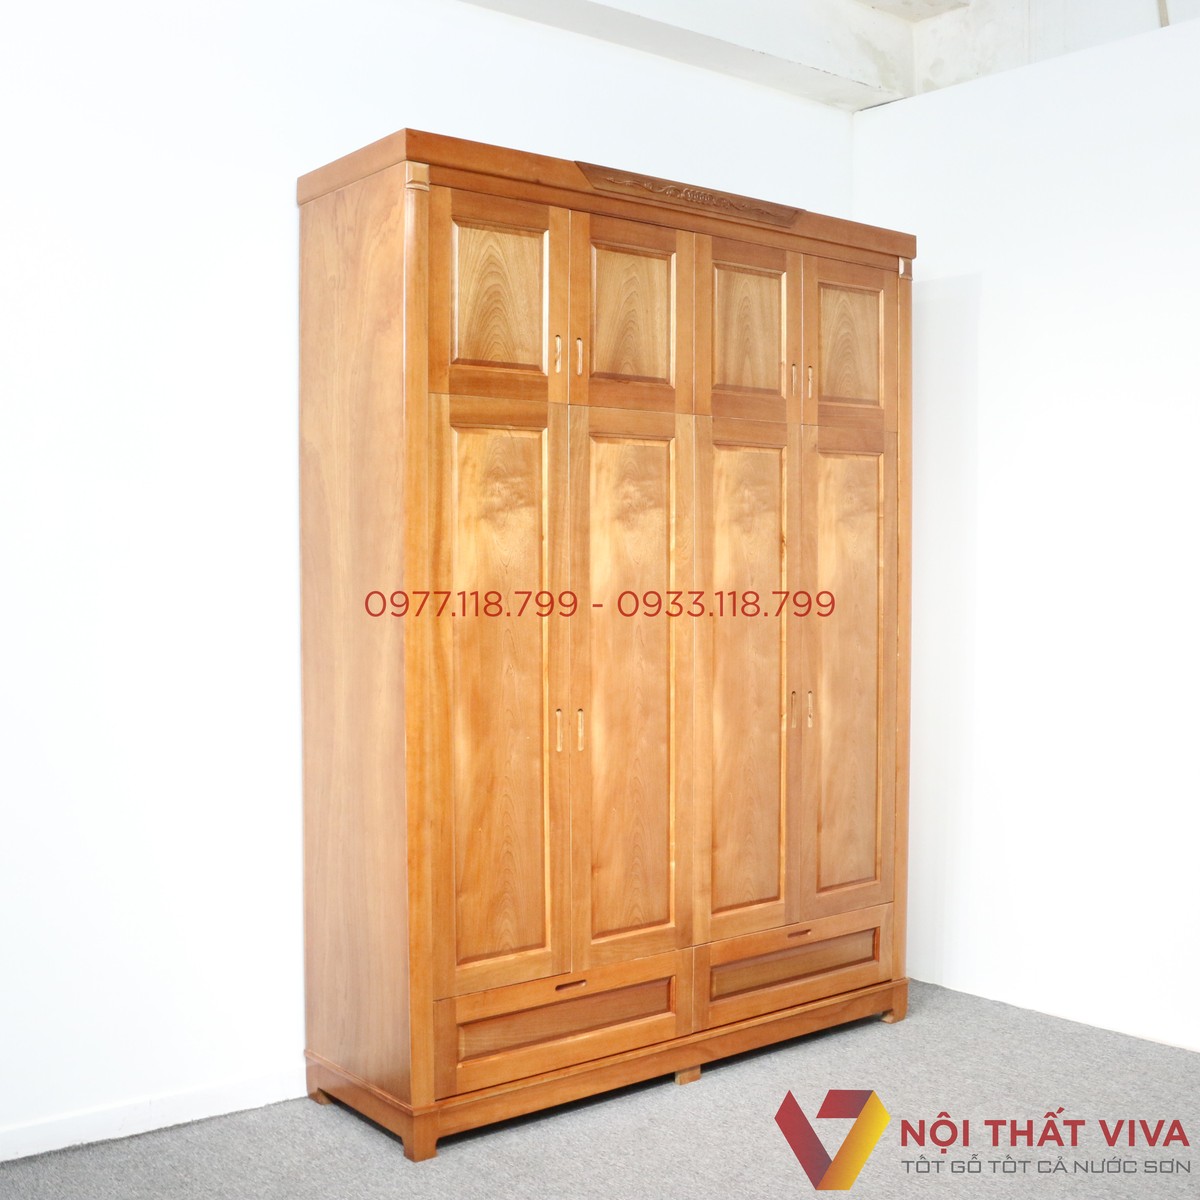 Gợi ý 7 mẫu tủ quần áo gỗ Xoan Đào đẹp với giá rẻ